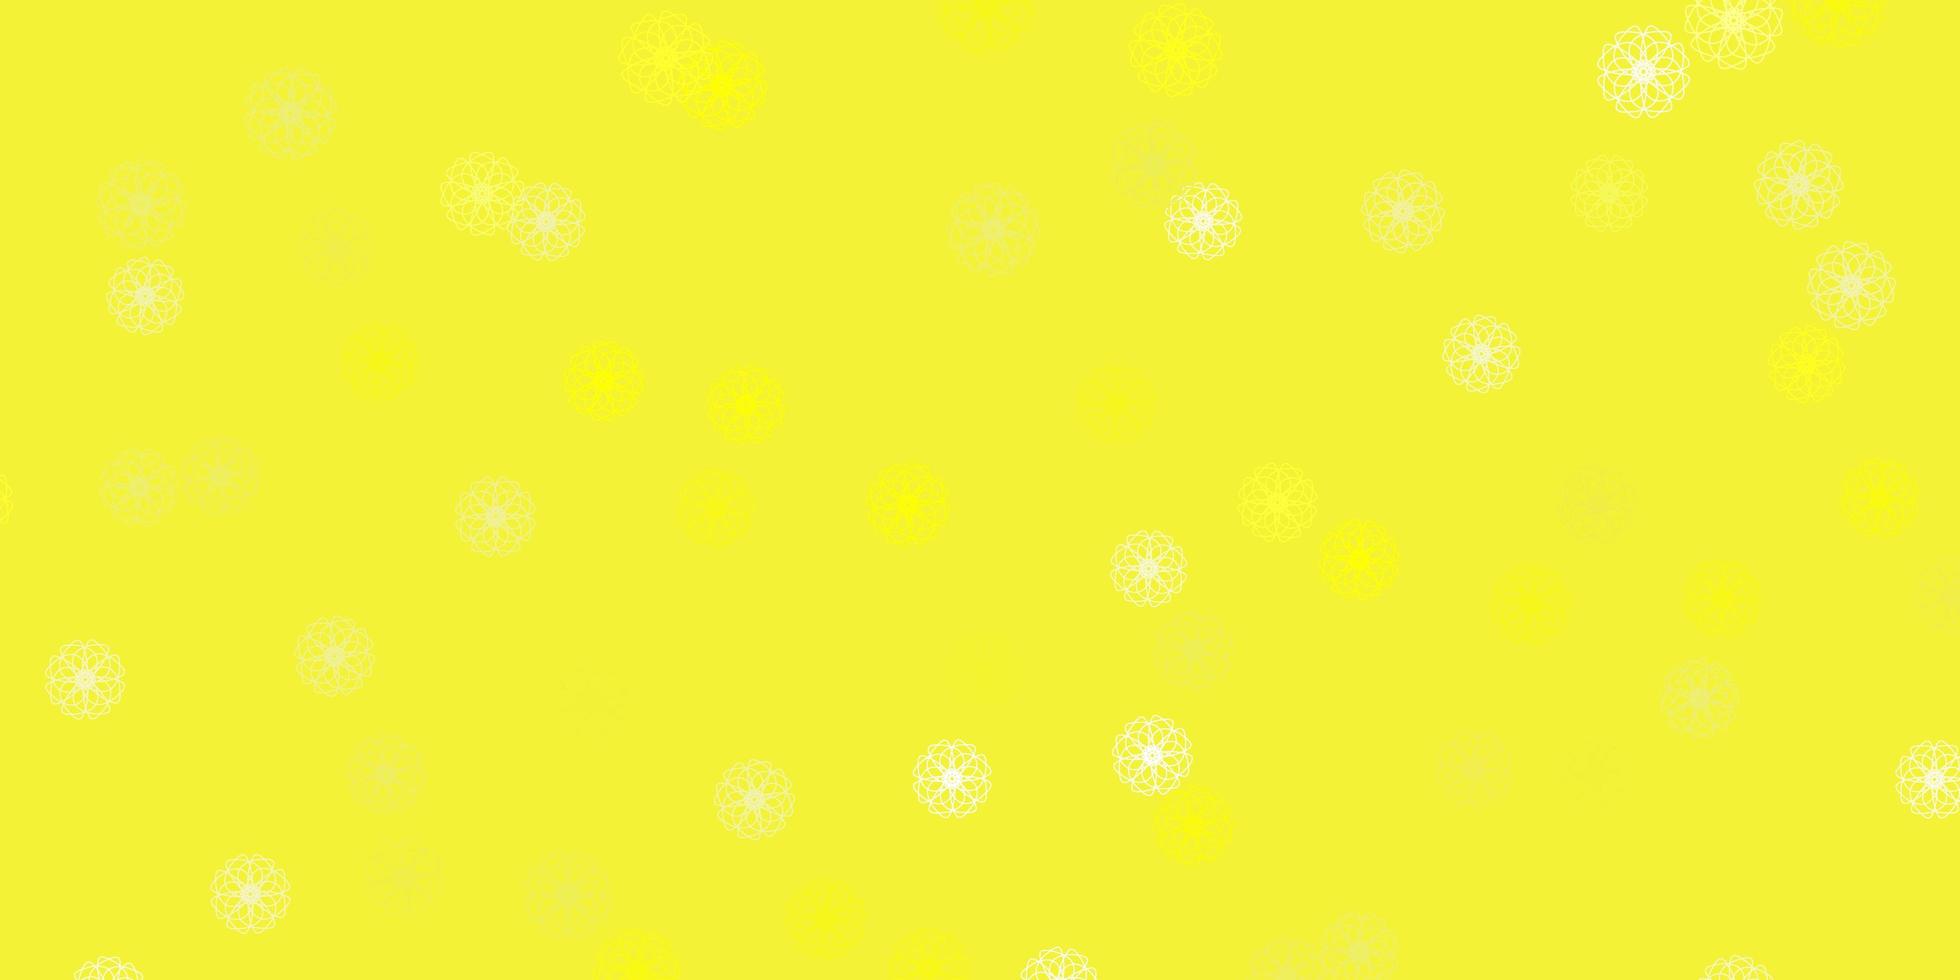 layout naturale vettoriale giallo chiaro con fiori.